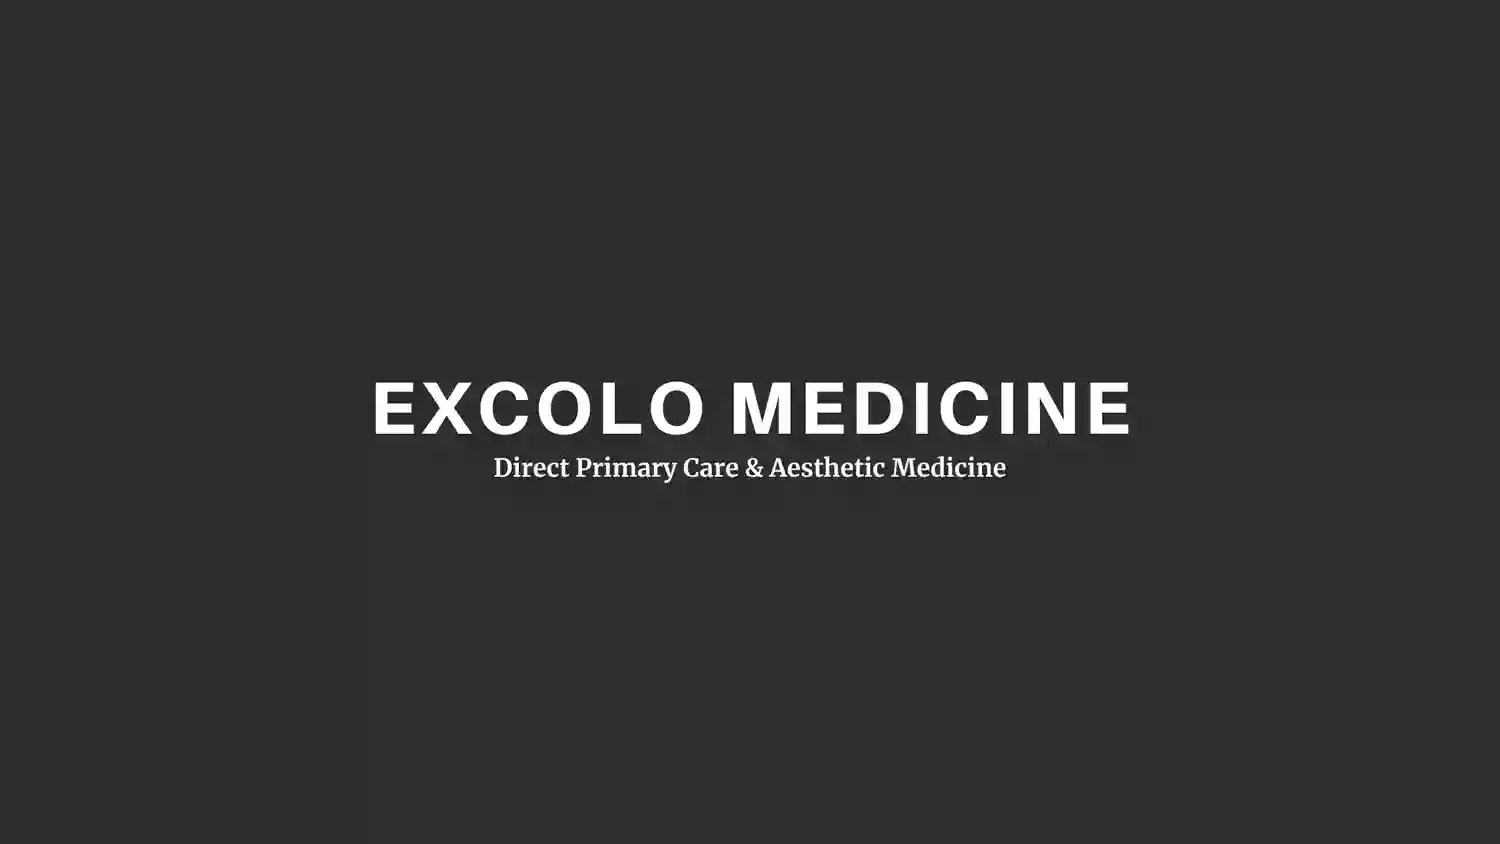 Excolo Medicine